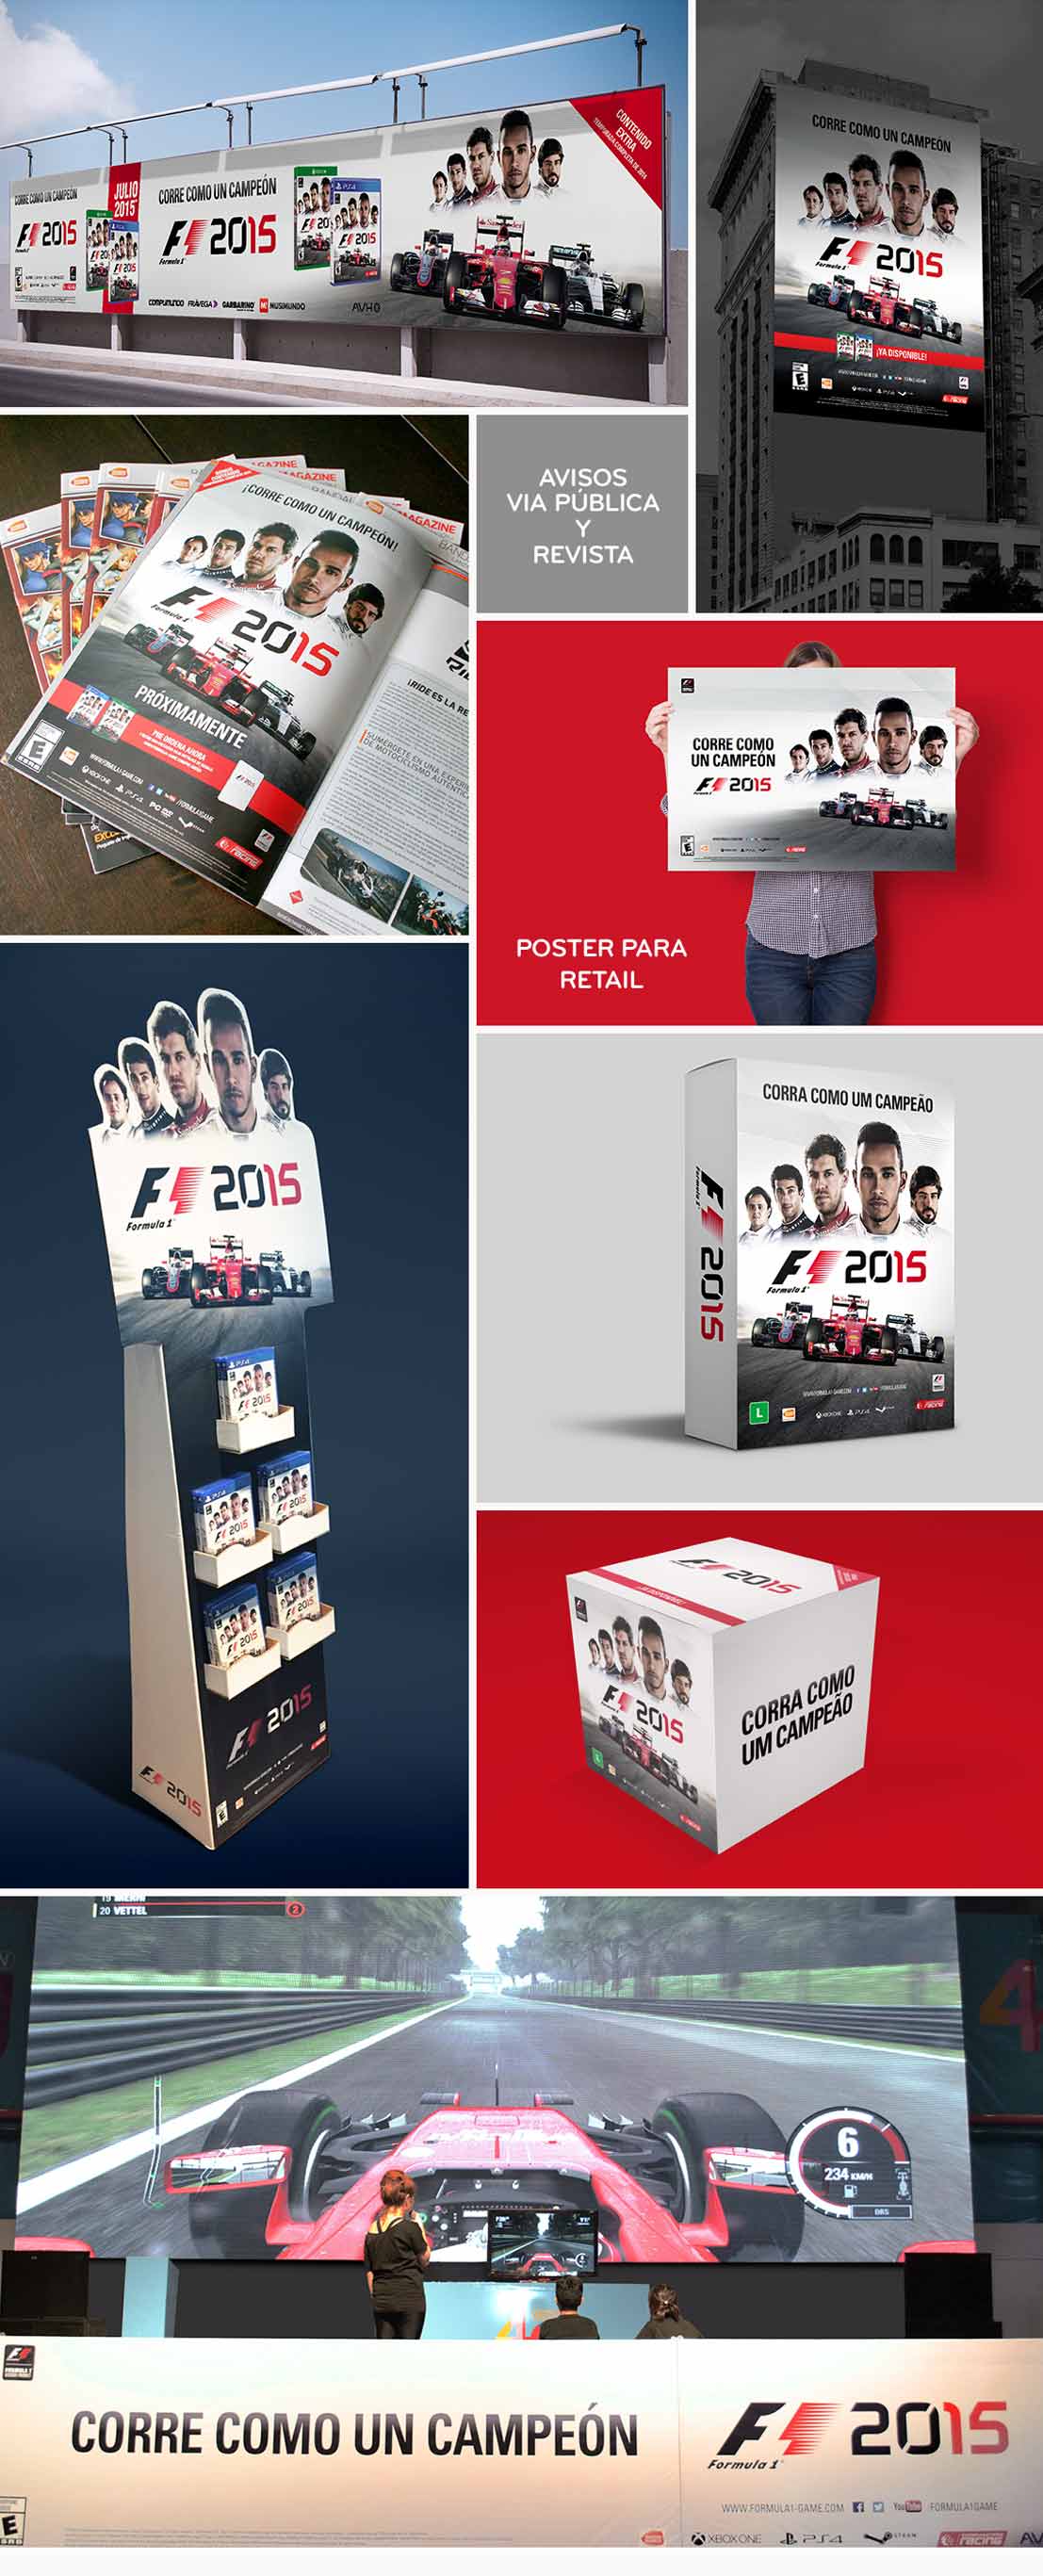 BNE F1, puntos de venta, via publica, campaña grafica